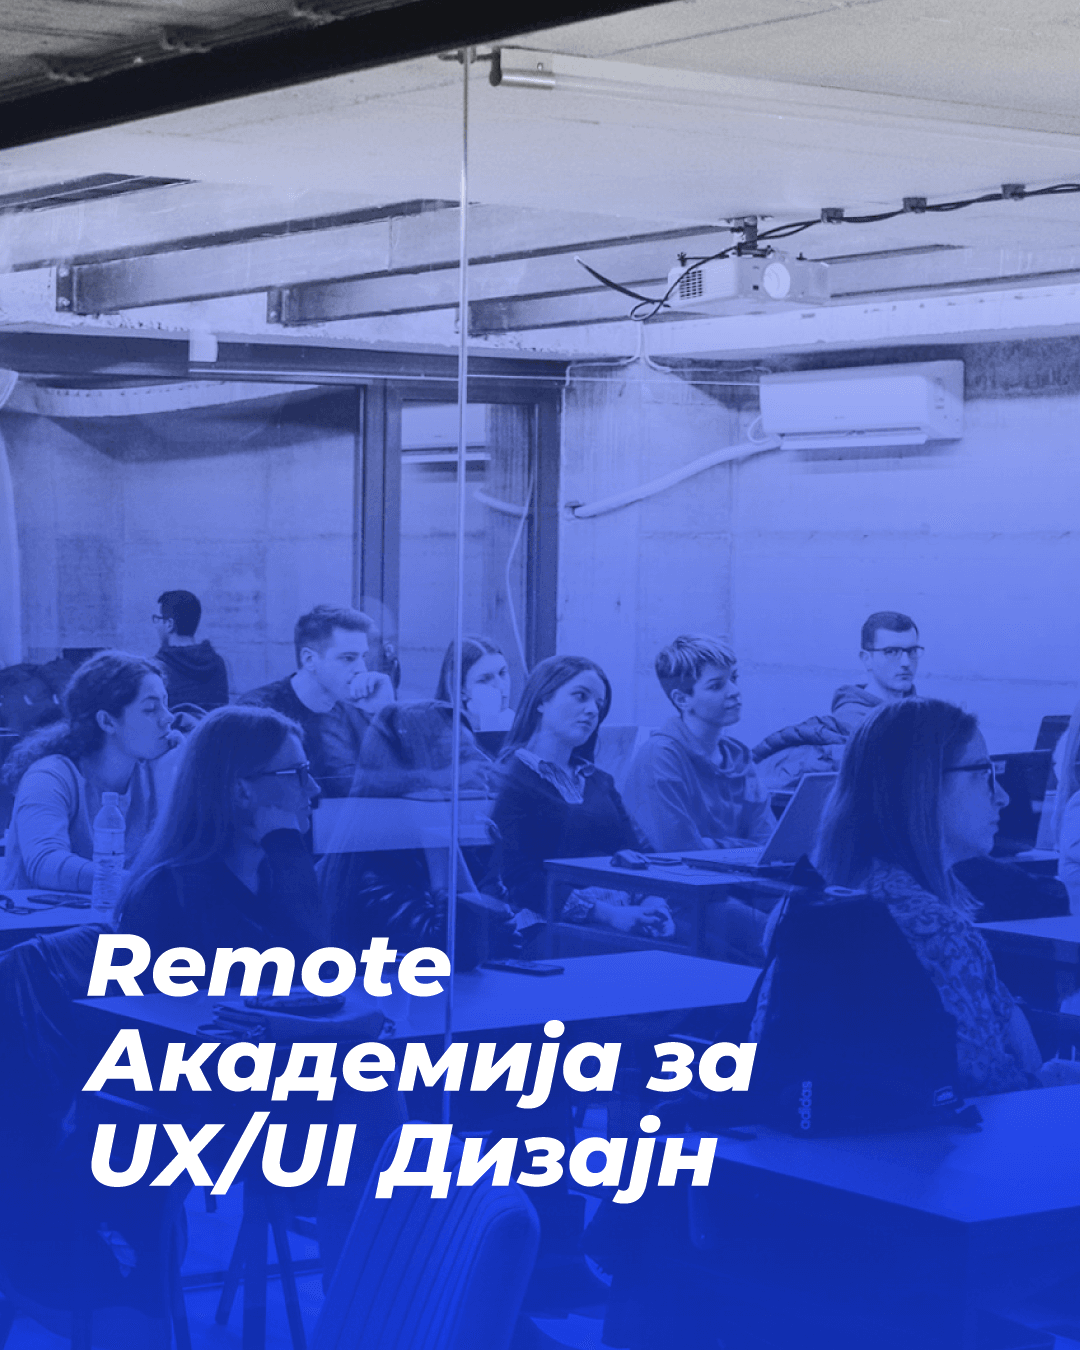 UX/UI Remote Academy